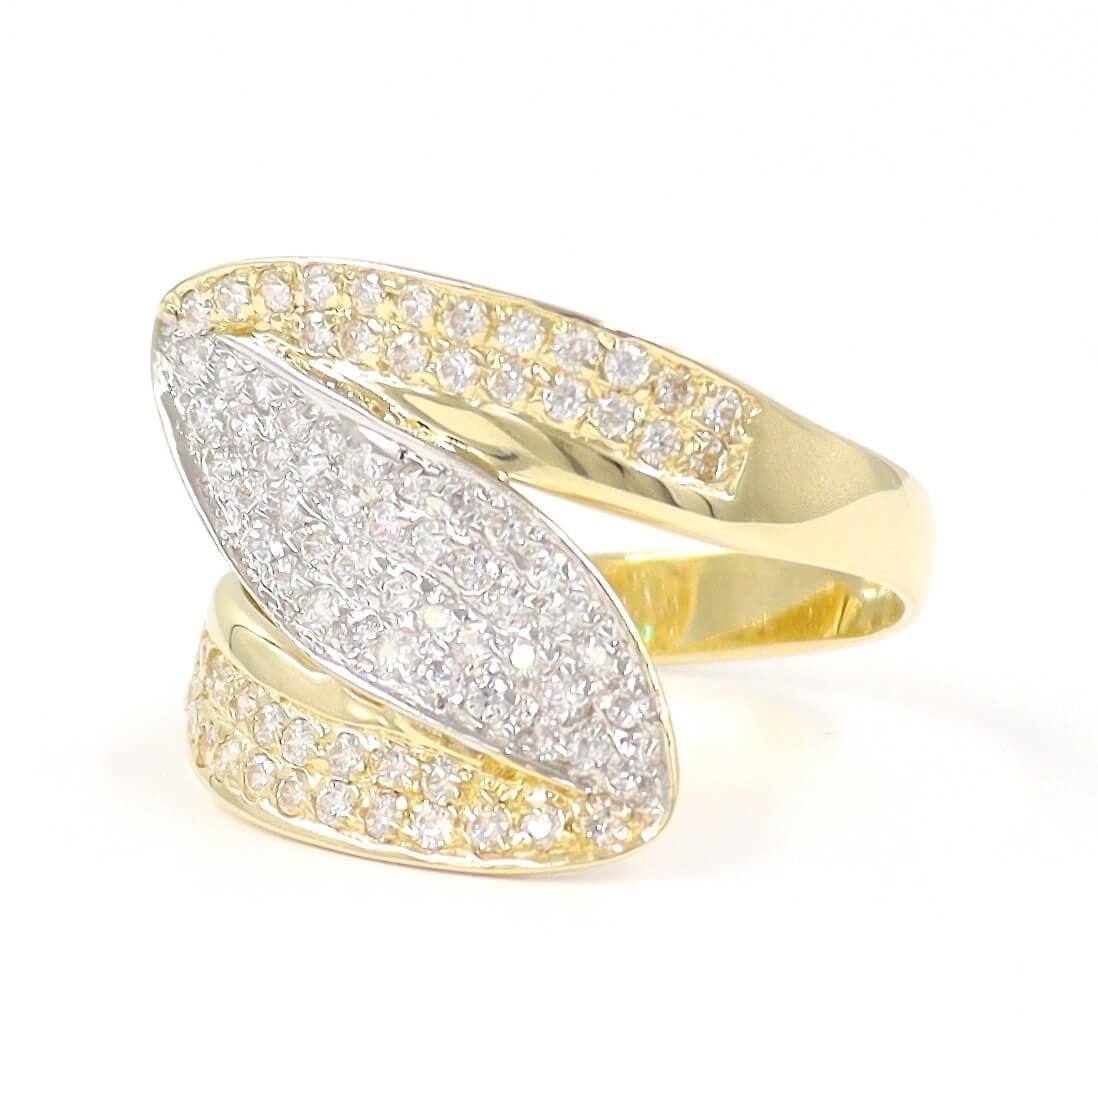 Δίχρωμο χρυσό δαχτυλίδι με λευκές πέτρες